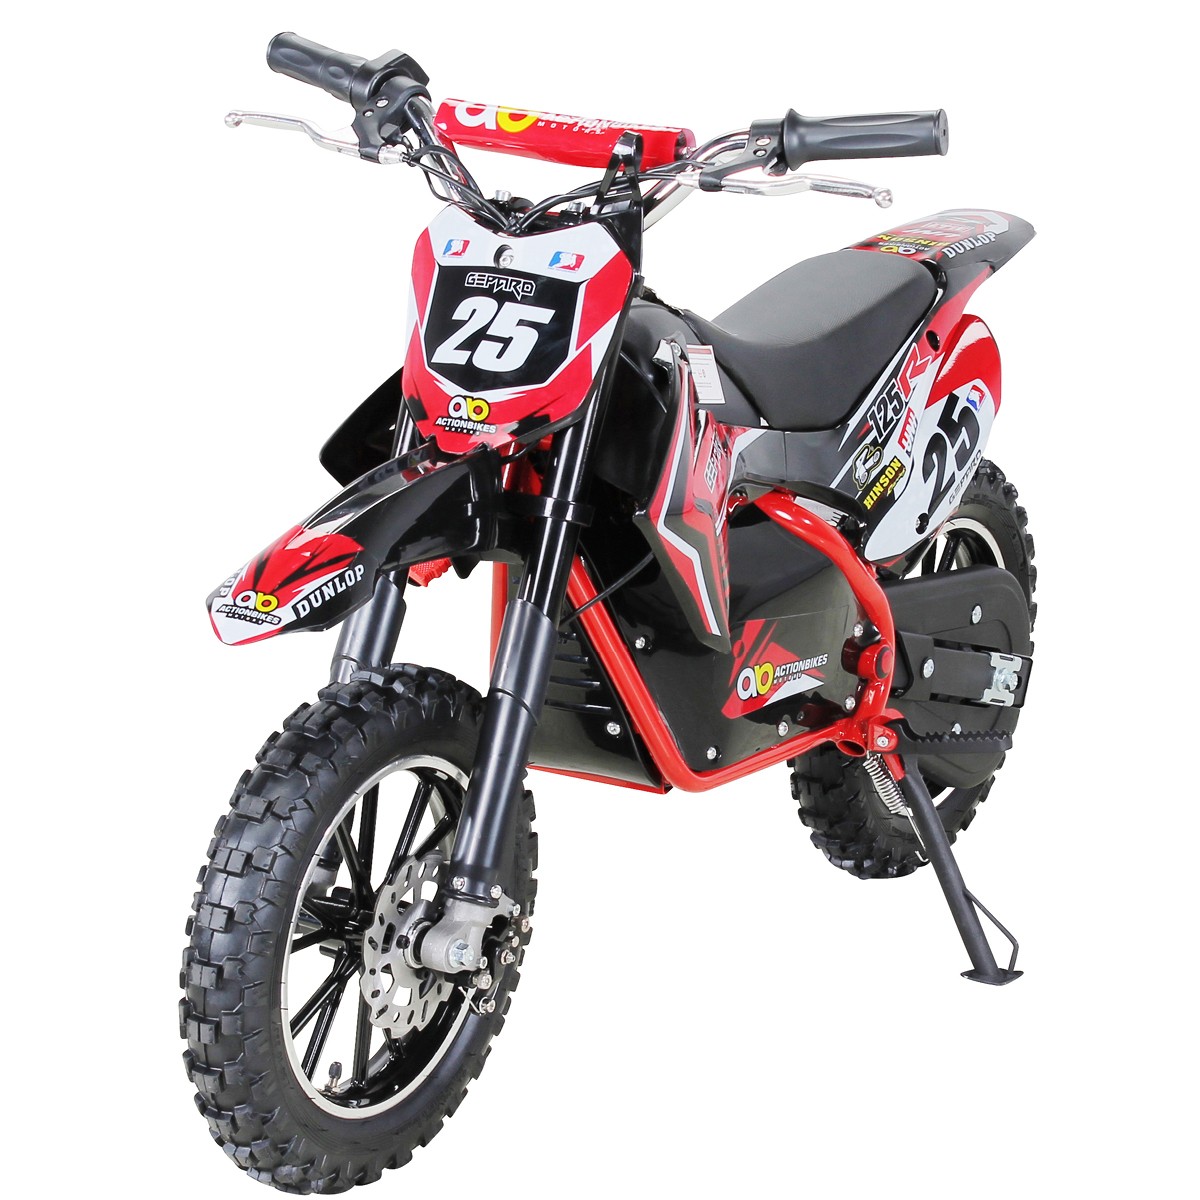 01-kinder-crossbike-rot-actionbikes-motors-gepard-500-watt-startbild